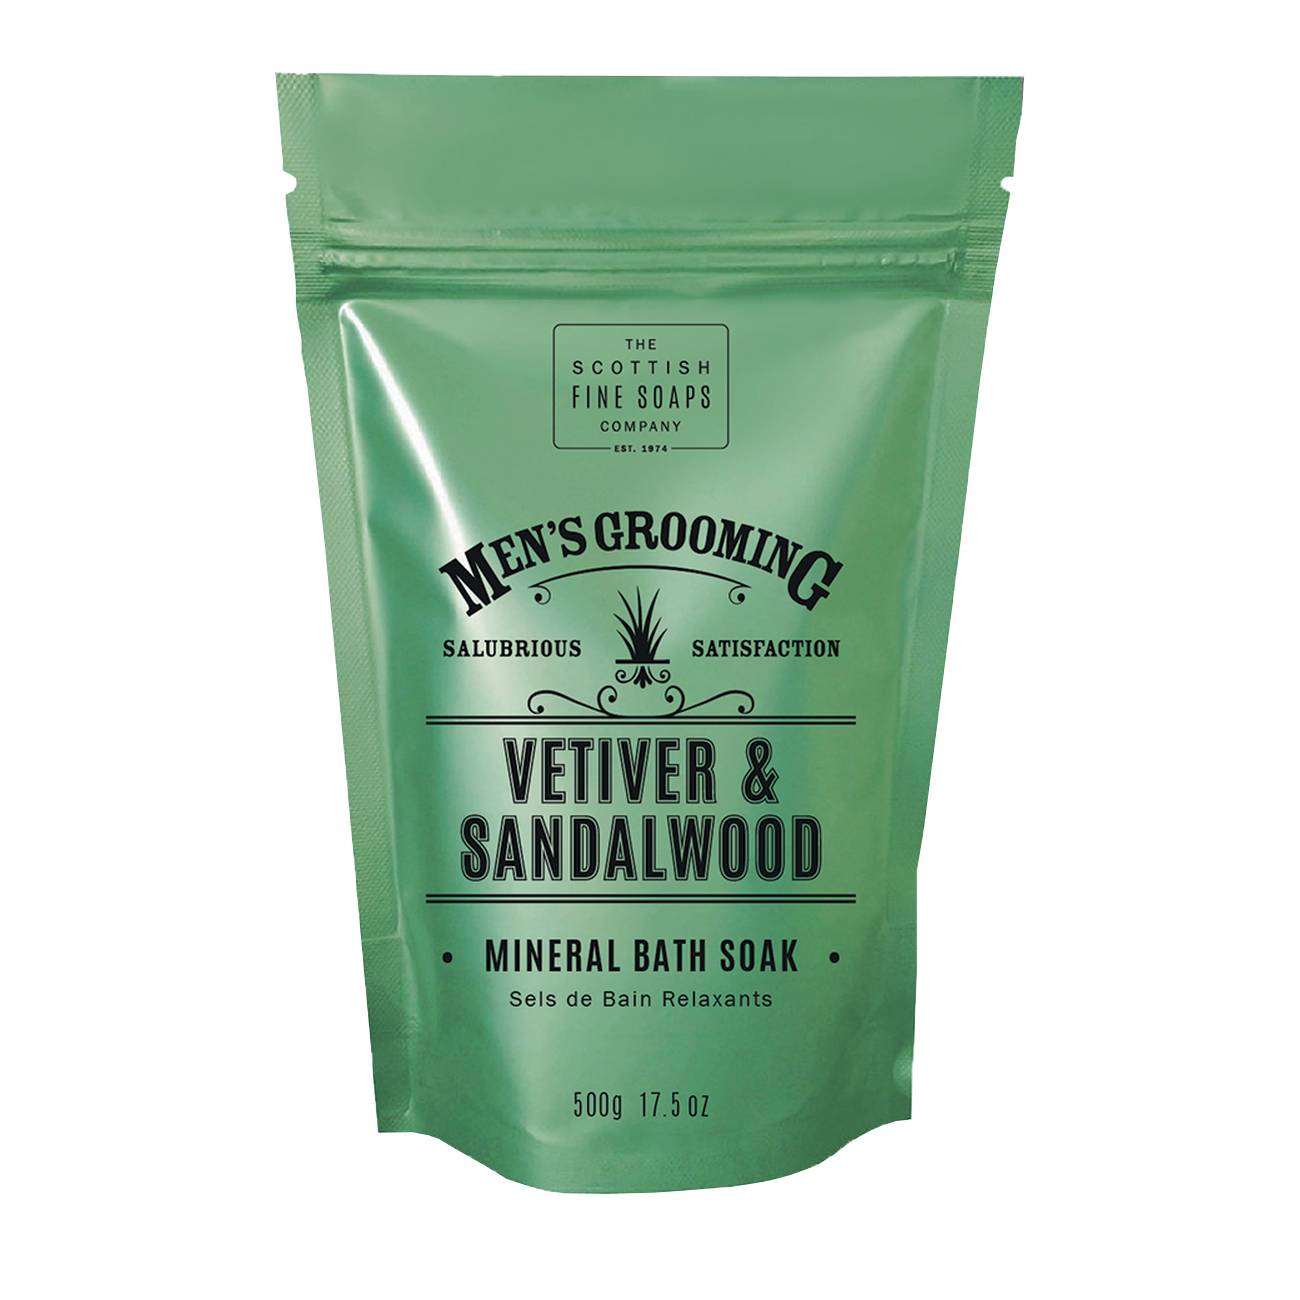 Vetiver & Sandalwood Mineral Bath Soak 500 gr original Scottish Fine Soaps bestvalue